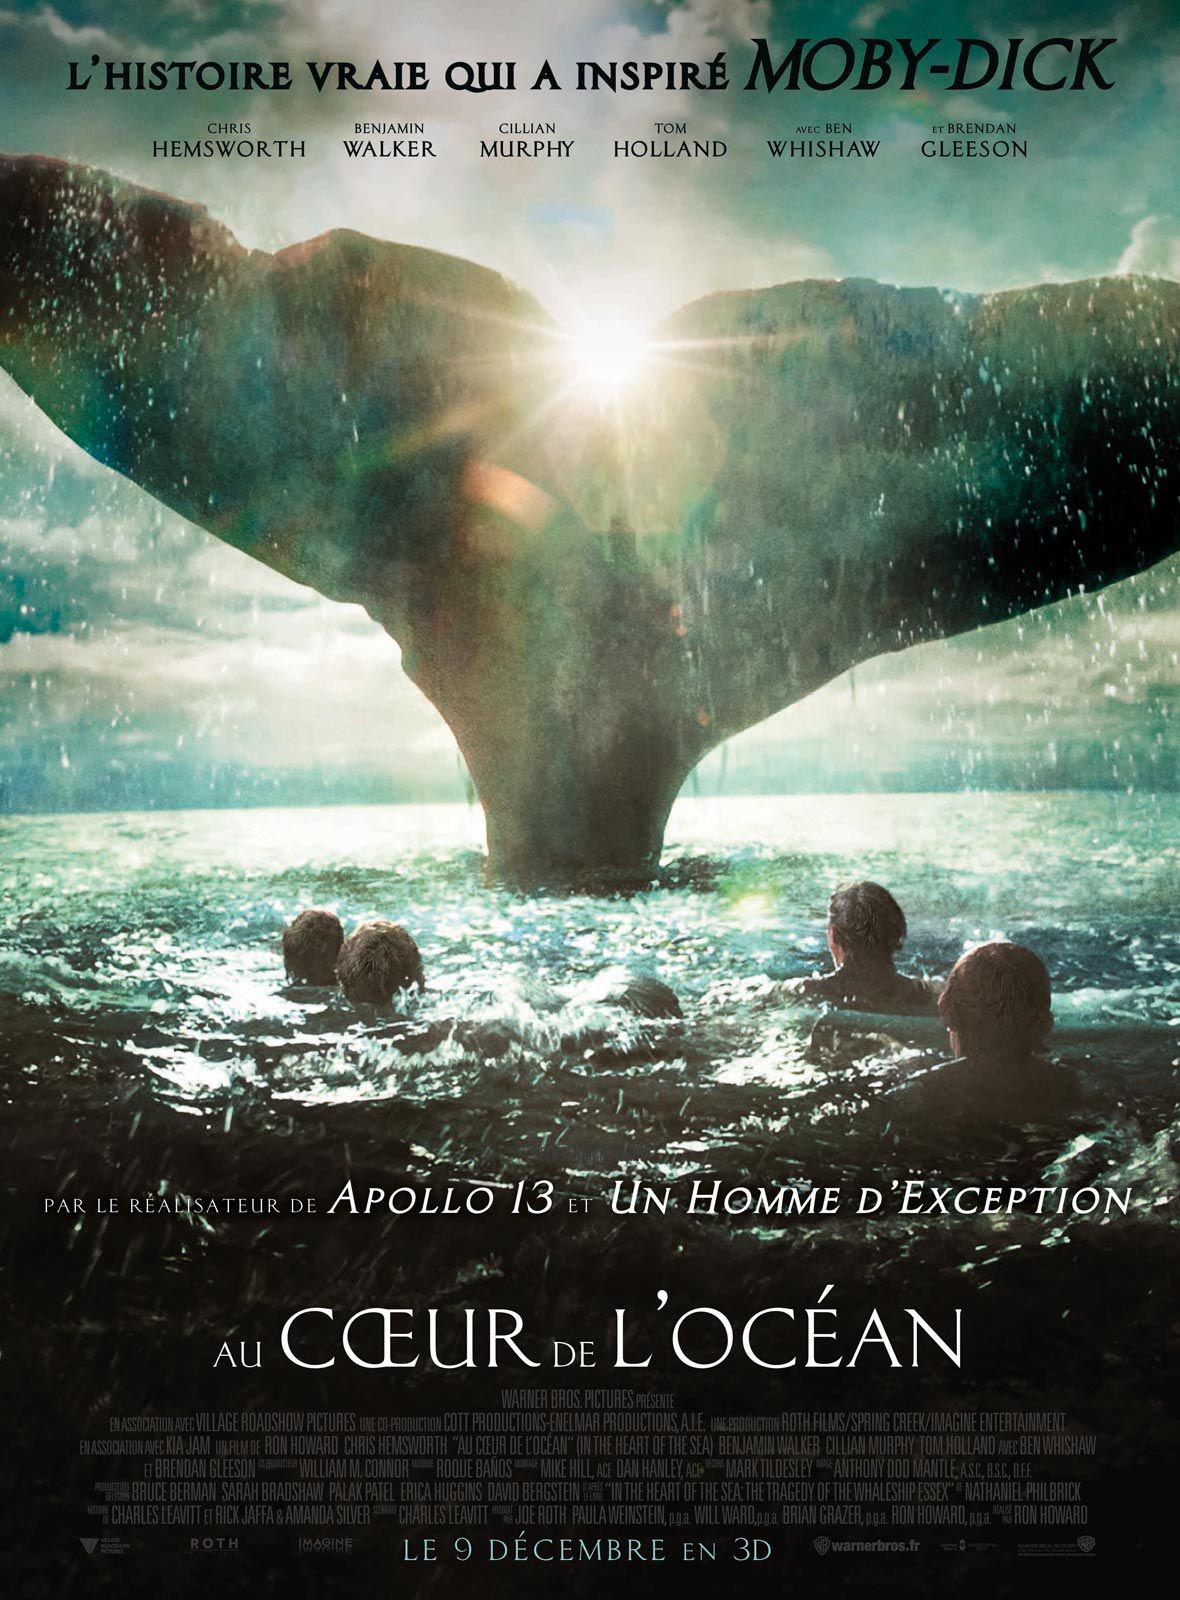 Au cœur de l'océan - Film (2015) streaming VF gratuit complet